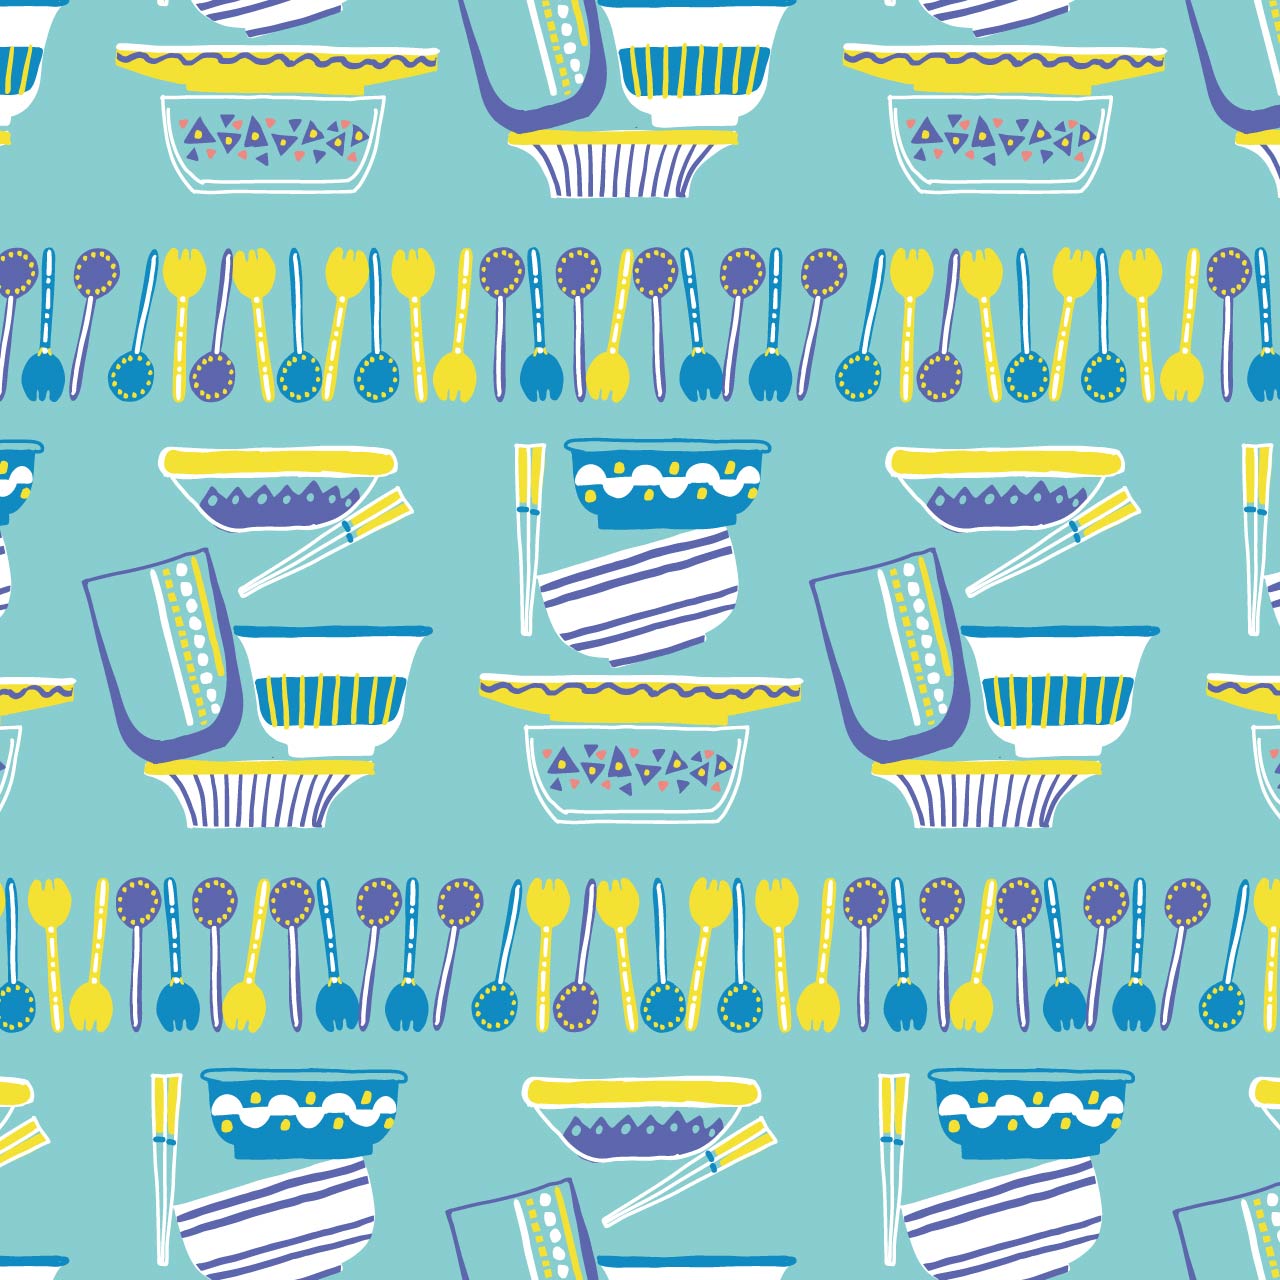 水色の背景に青や黄色のカトラリーと食器のパターン